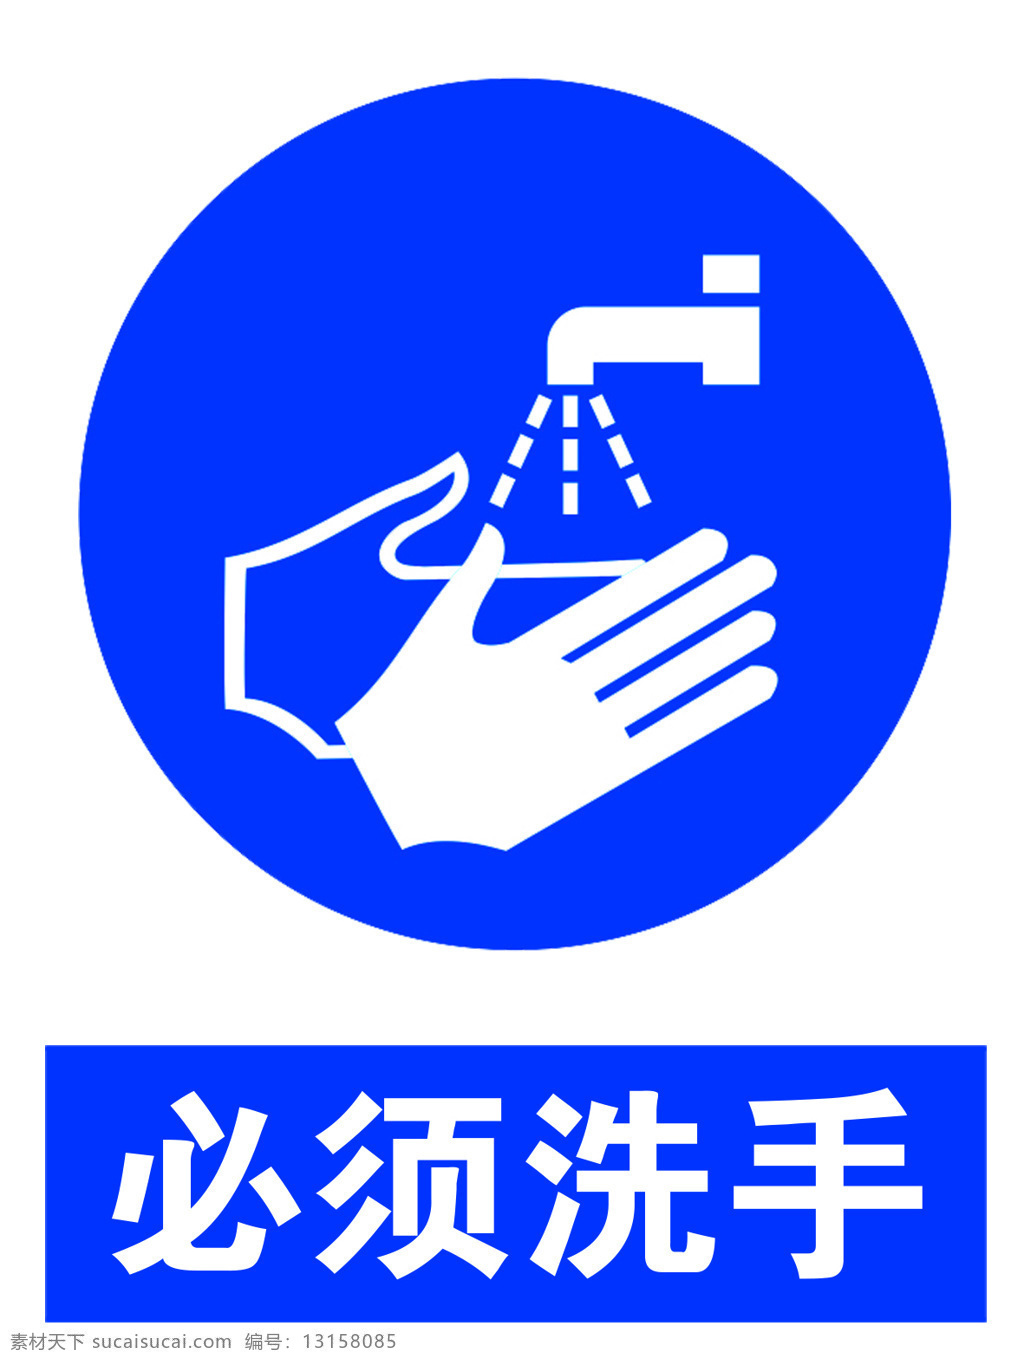 必须洗手 必须 洗手 蓝色 标识 标志 工厂标识 化工标识 工地标识 室内广告设计